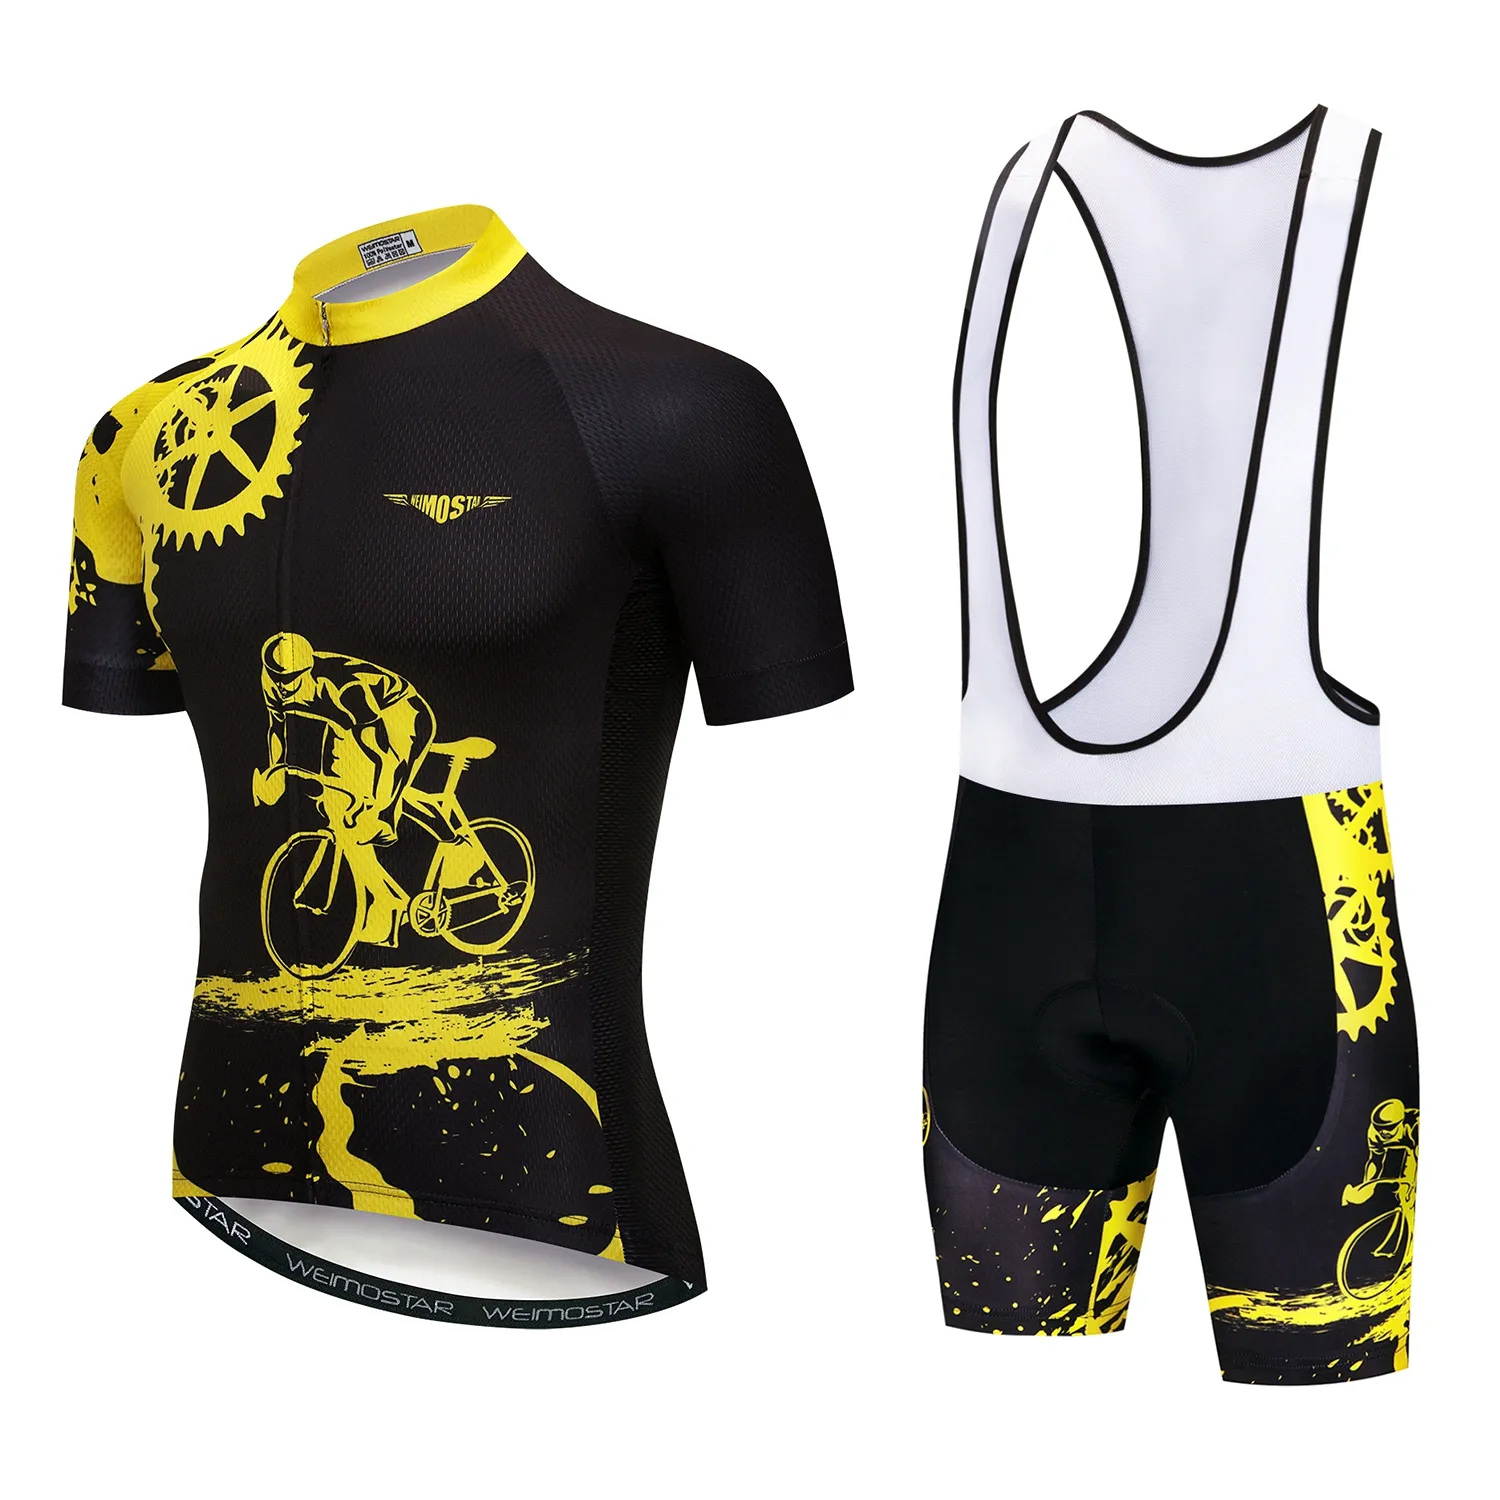 Özel bisiklet gömlek Bib şort takımı erkek spor bisiklet bisiklet Jersey seti bisiklet giyim takım elbise Mtb giysi üniforma Maillot sarı